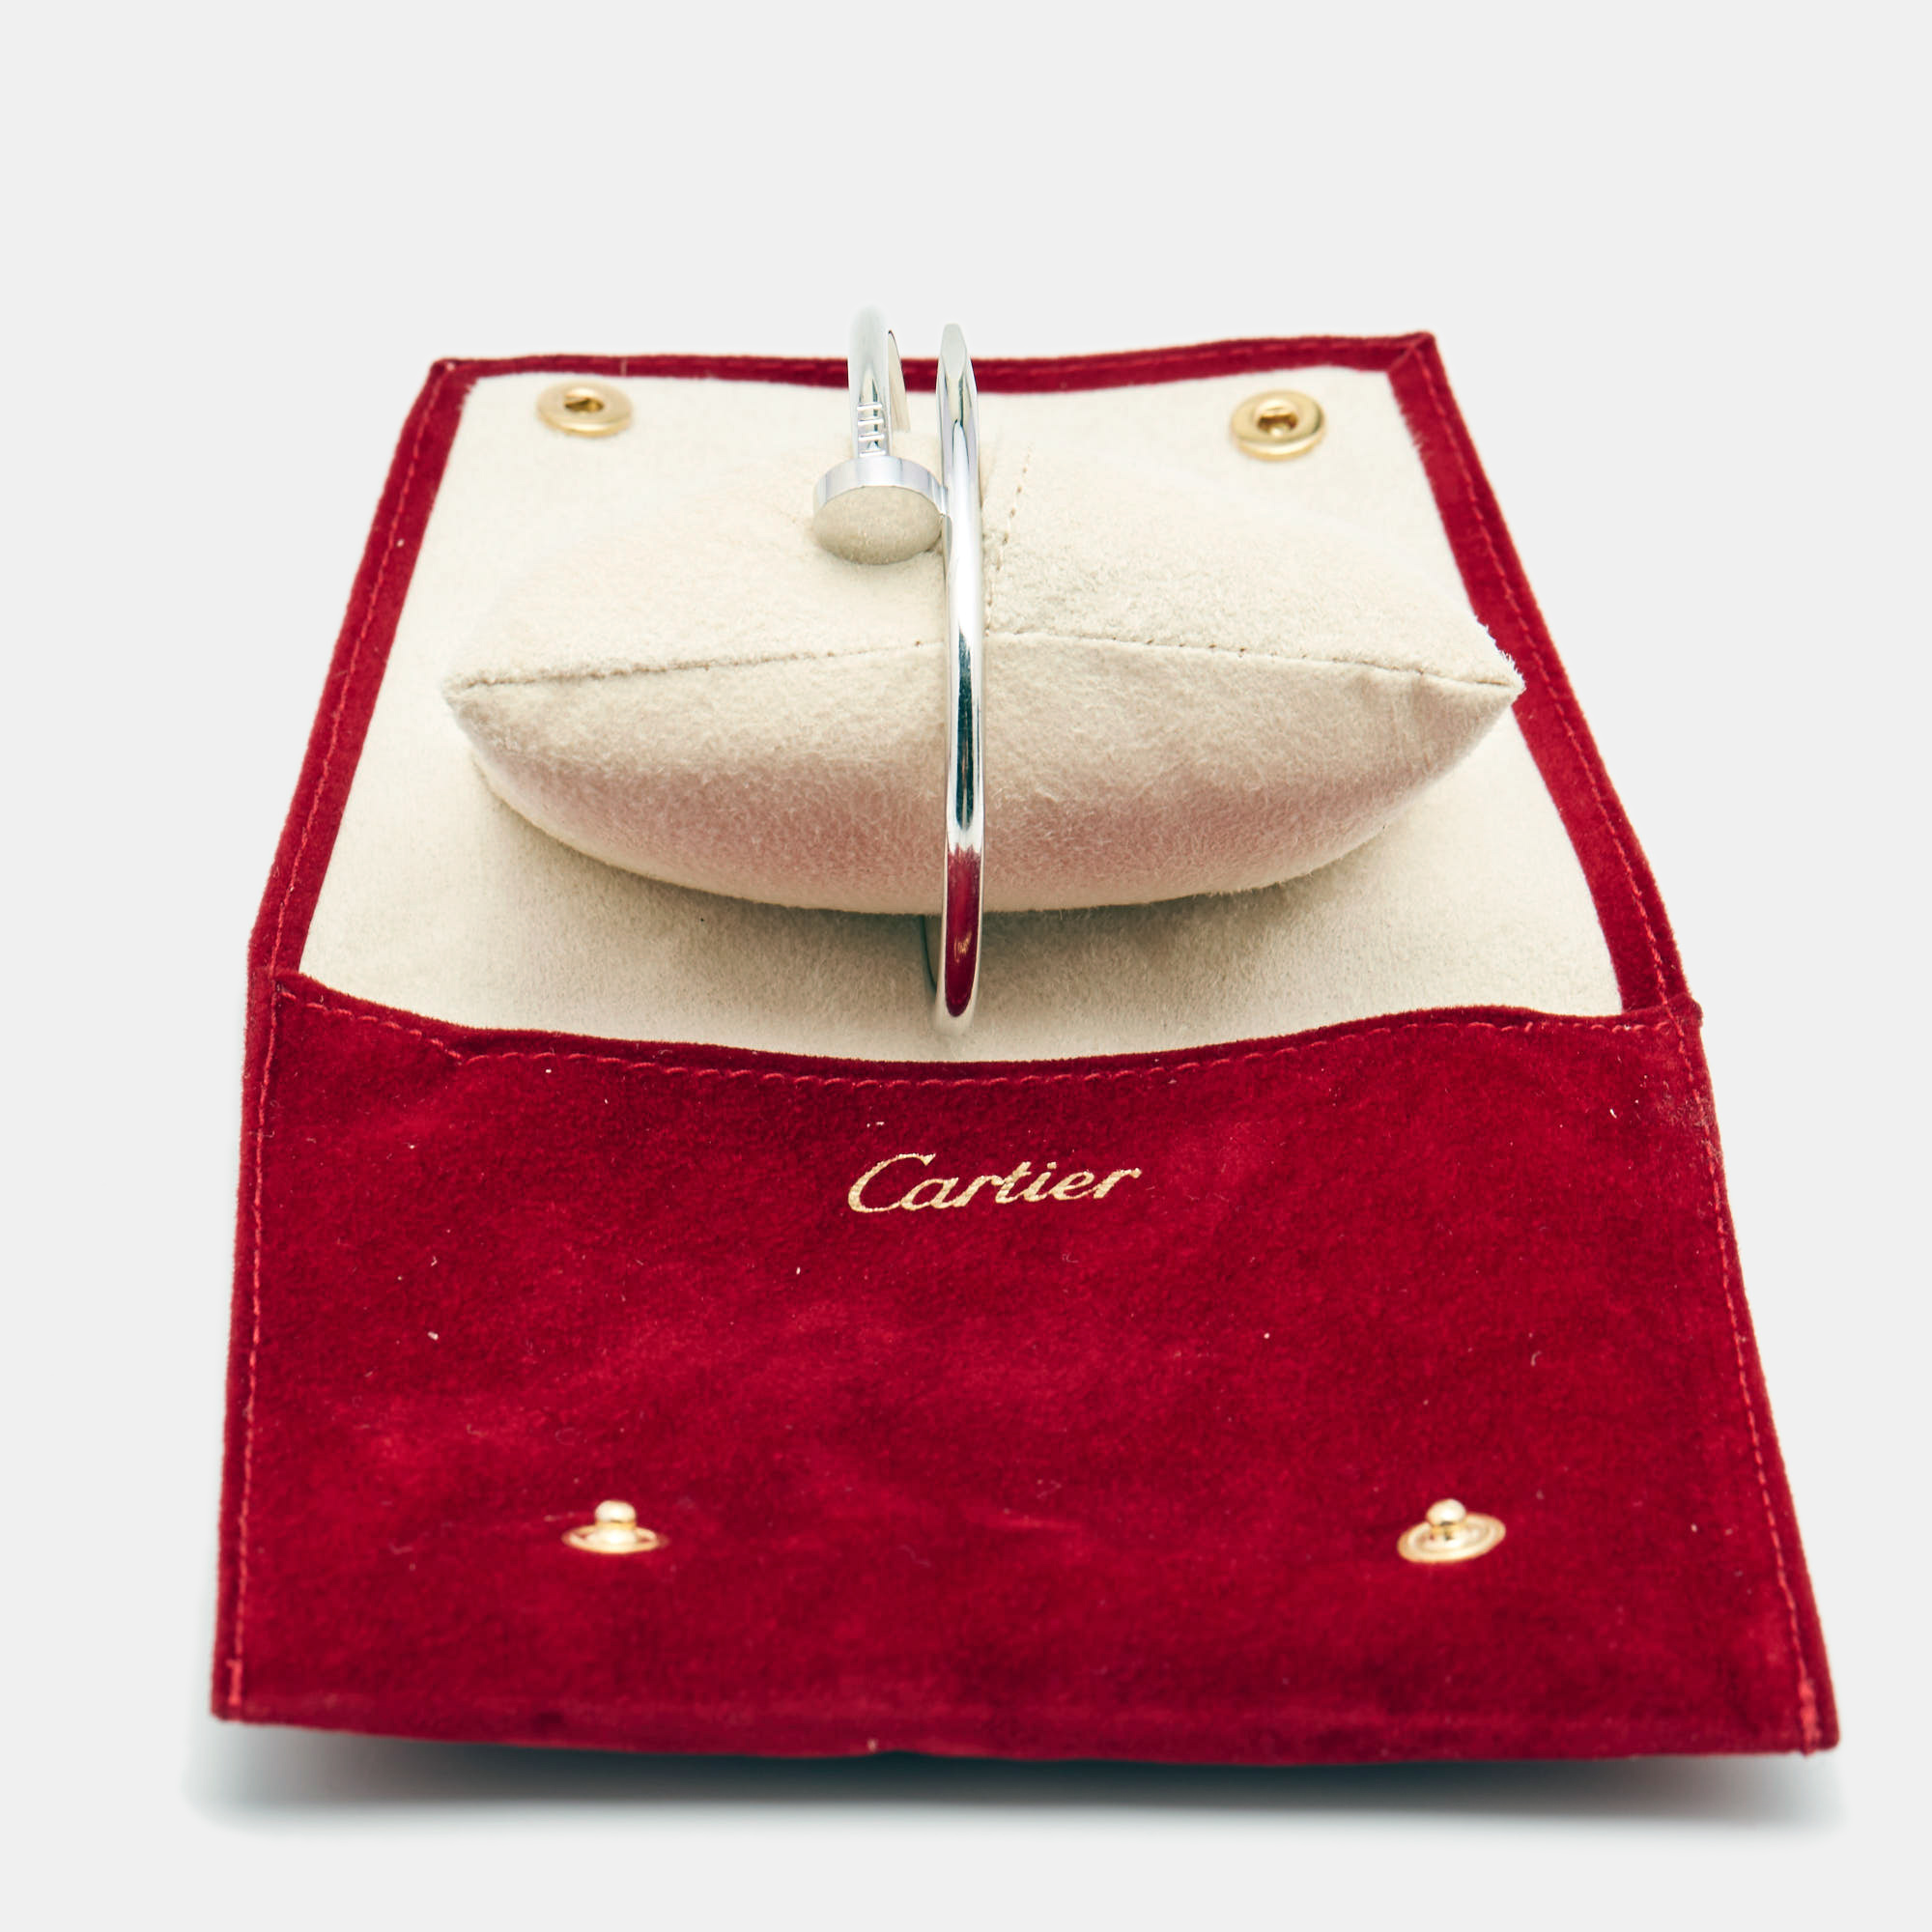 Cartier  18k White Gold Juste Un Clou Bracelet